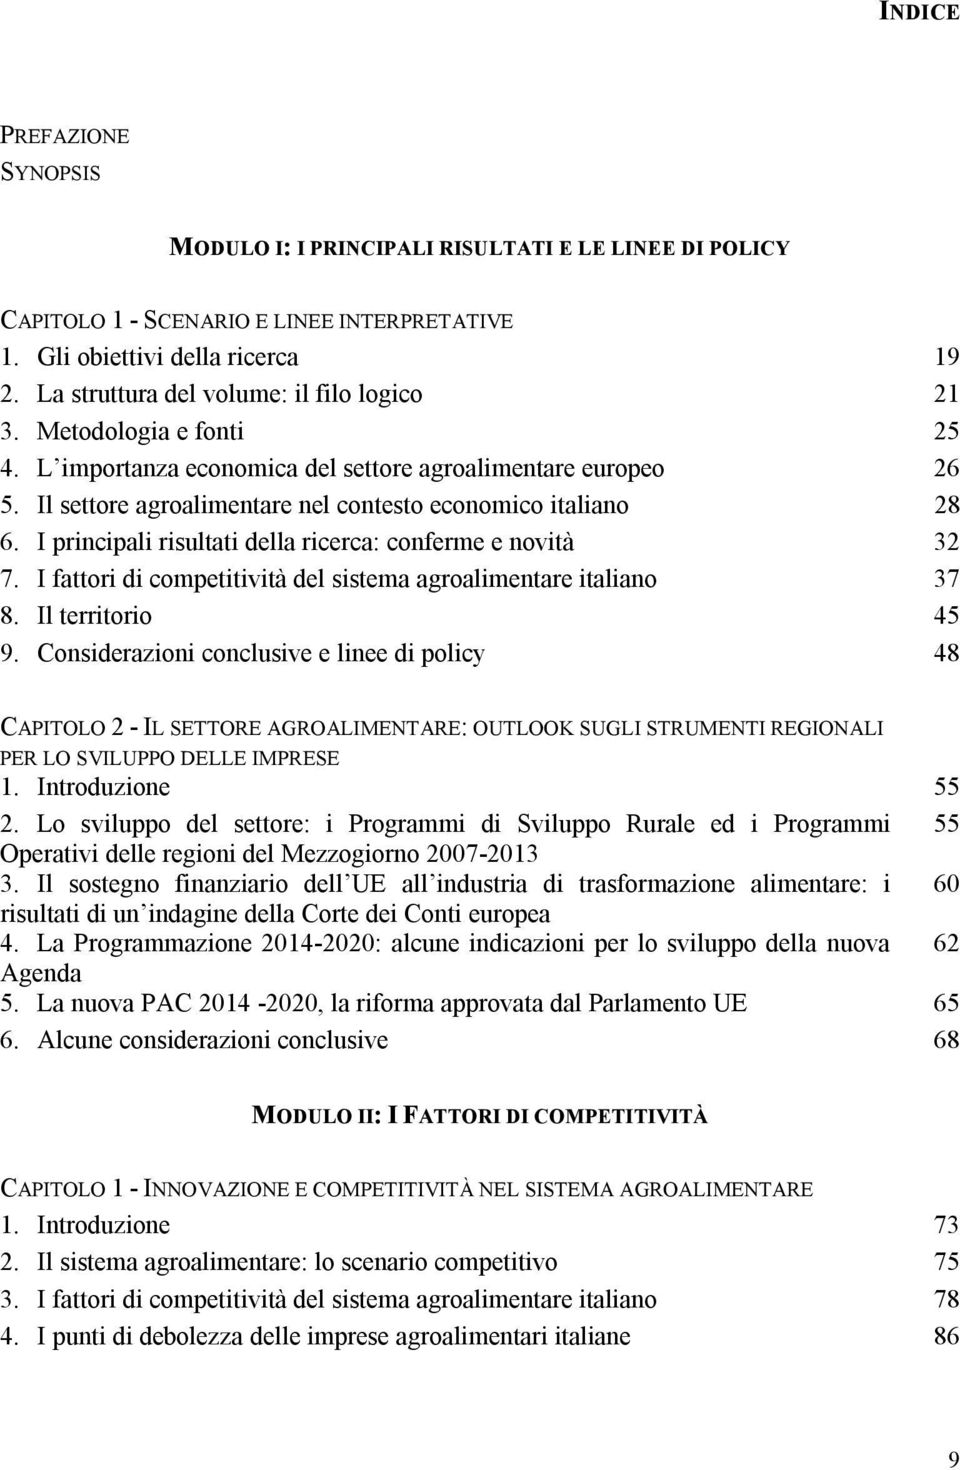 I principali risultati della ricerca: conferme e novità 32 7. I fattori di competitività del sistema agroalimentare italiano 37 8. Il territorio 45 9.